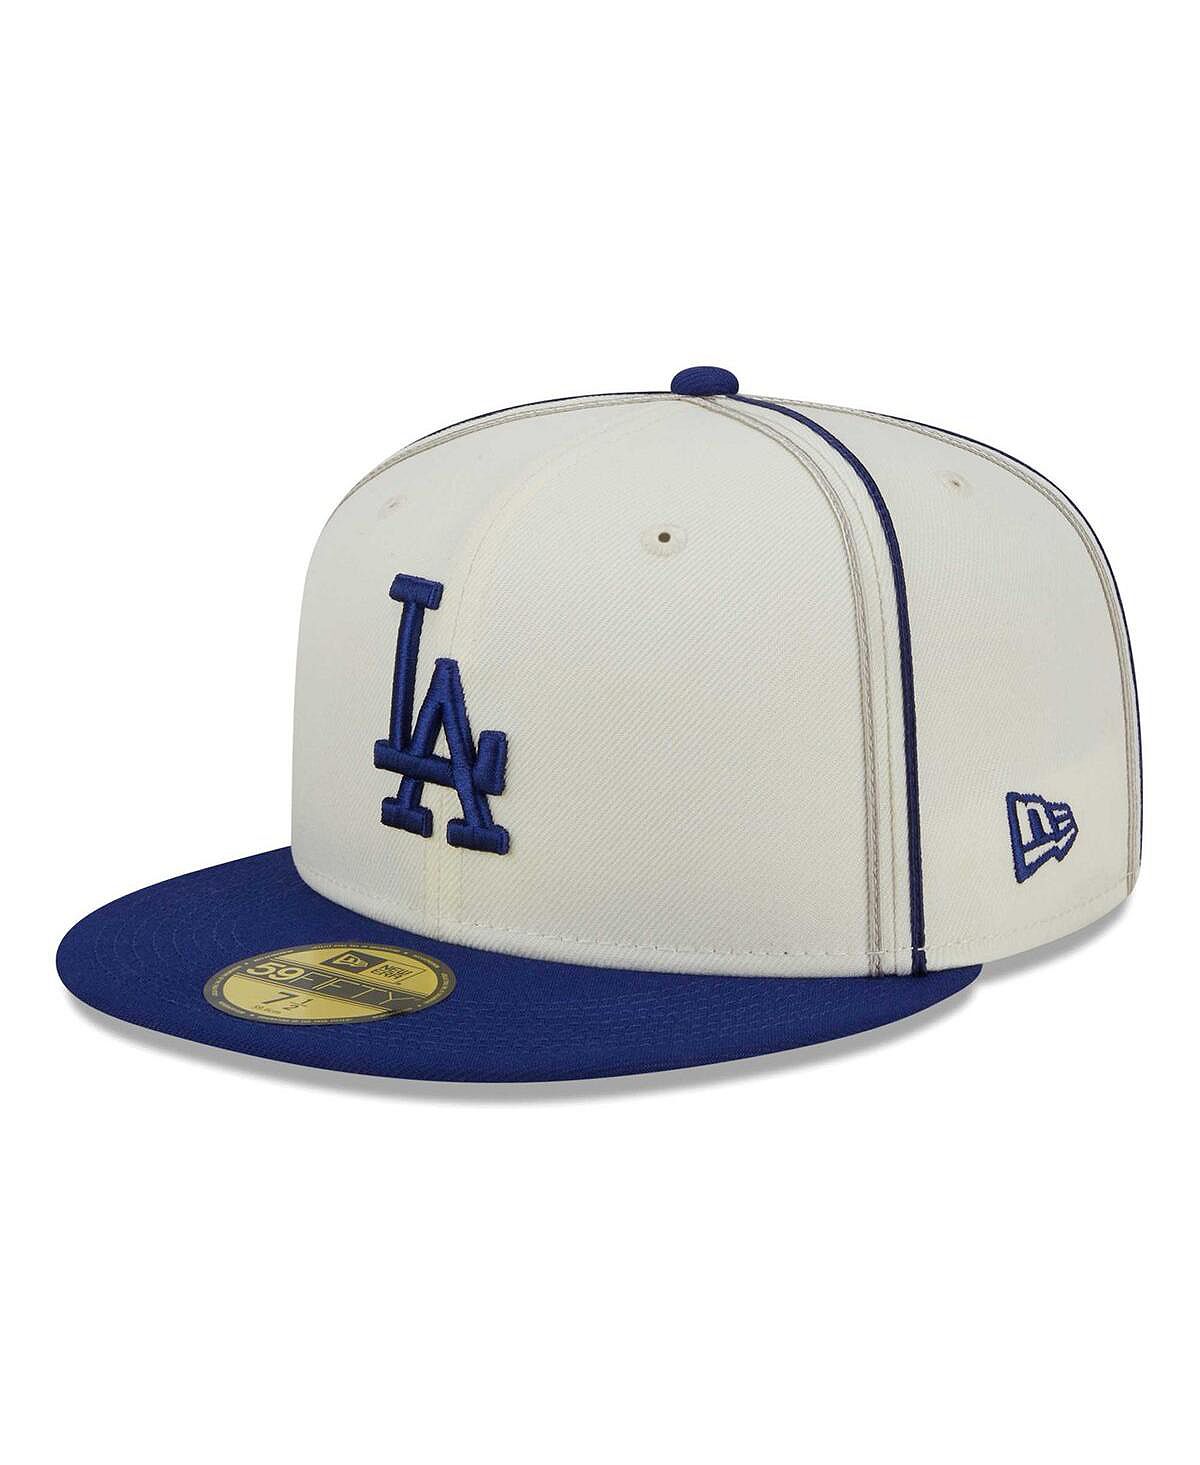 Мужская кремовая шляпа Royal Los Angeles Dodgers Chrome Sutash 59FIFTY. New Era